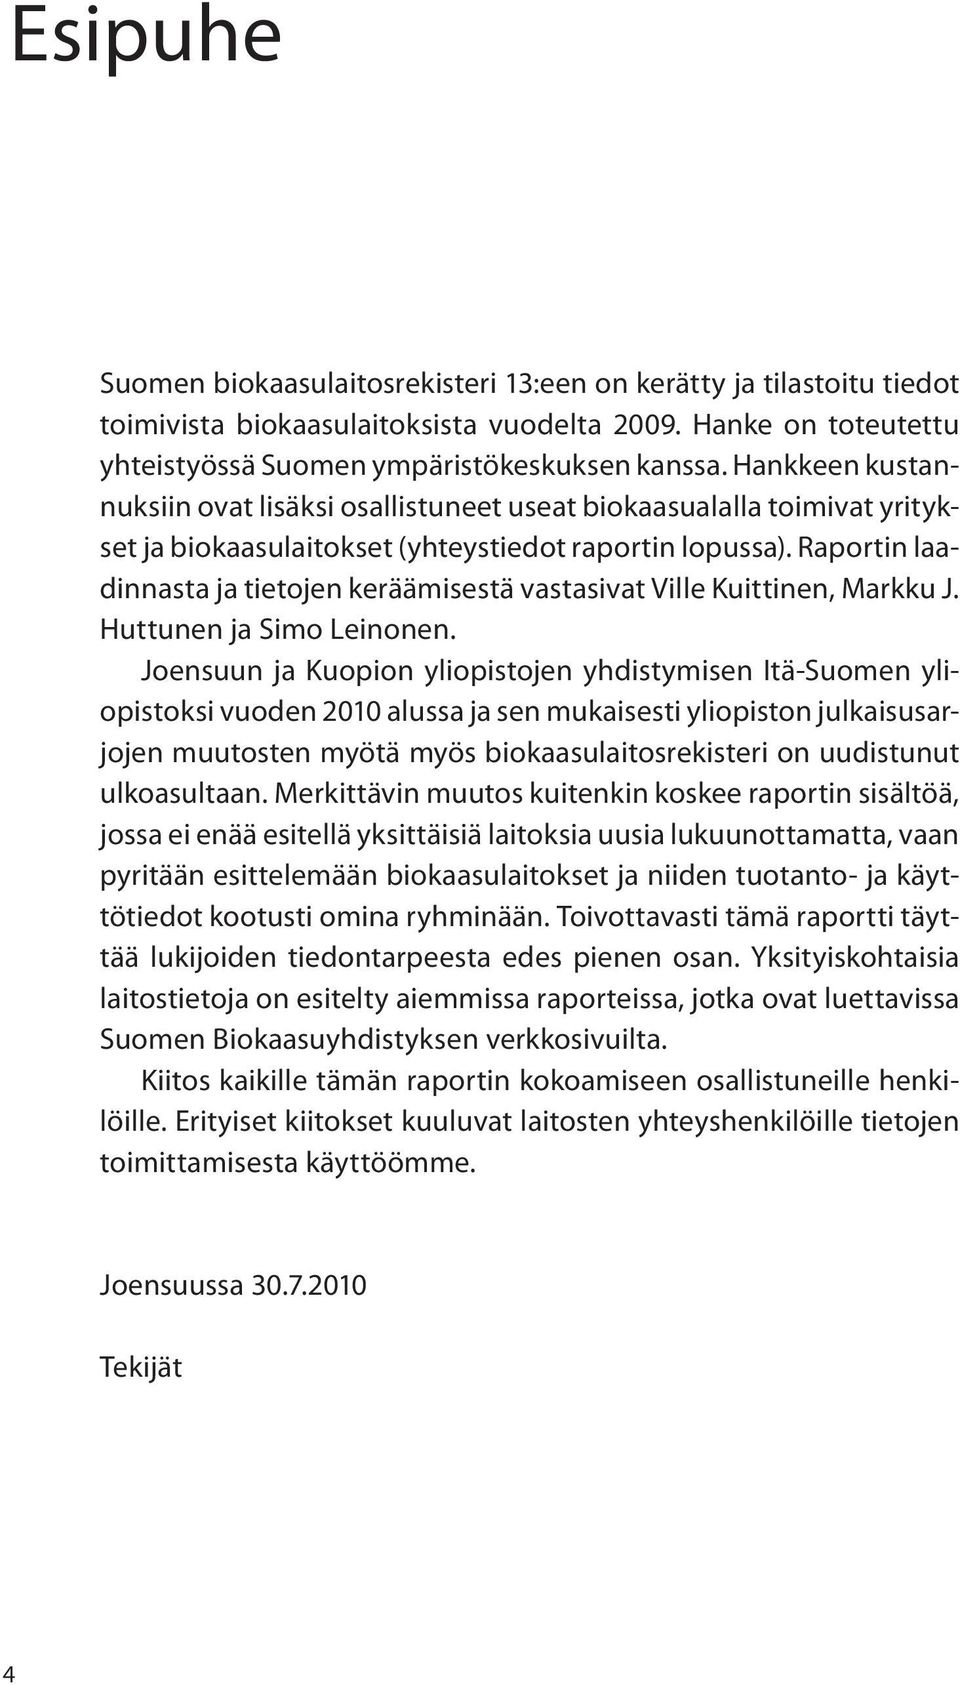 Raportin laadinnasta ja tietojen keräämisestä vastasivat Ville Kuittinen, Markku J. Huttunen ja Simo Leinonen.